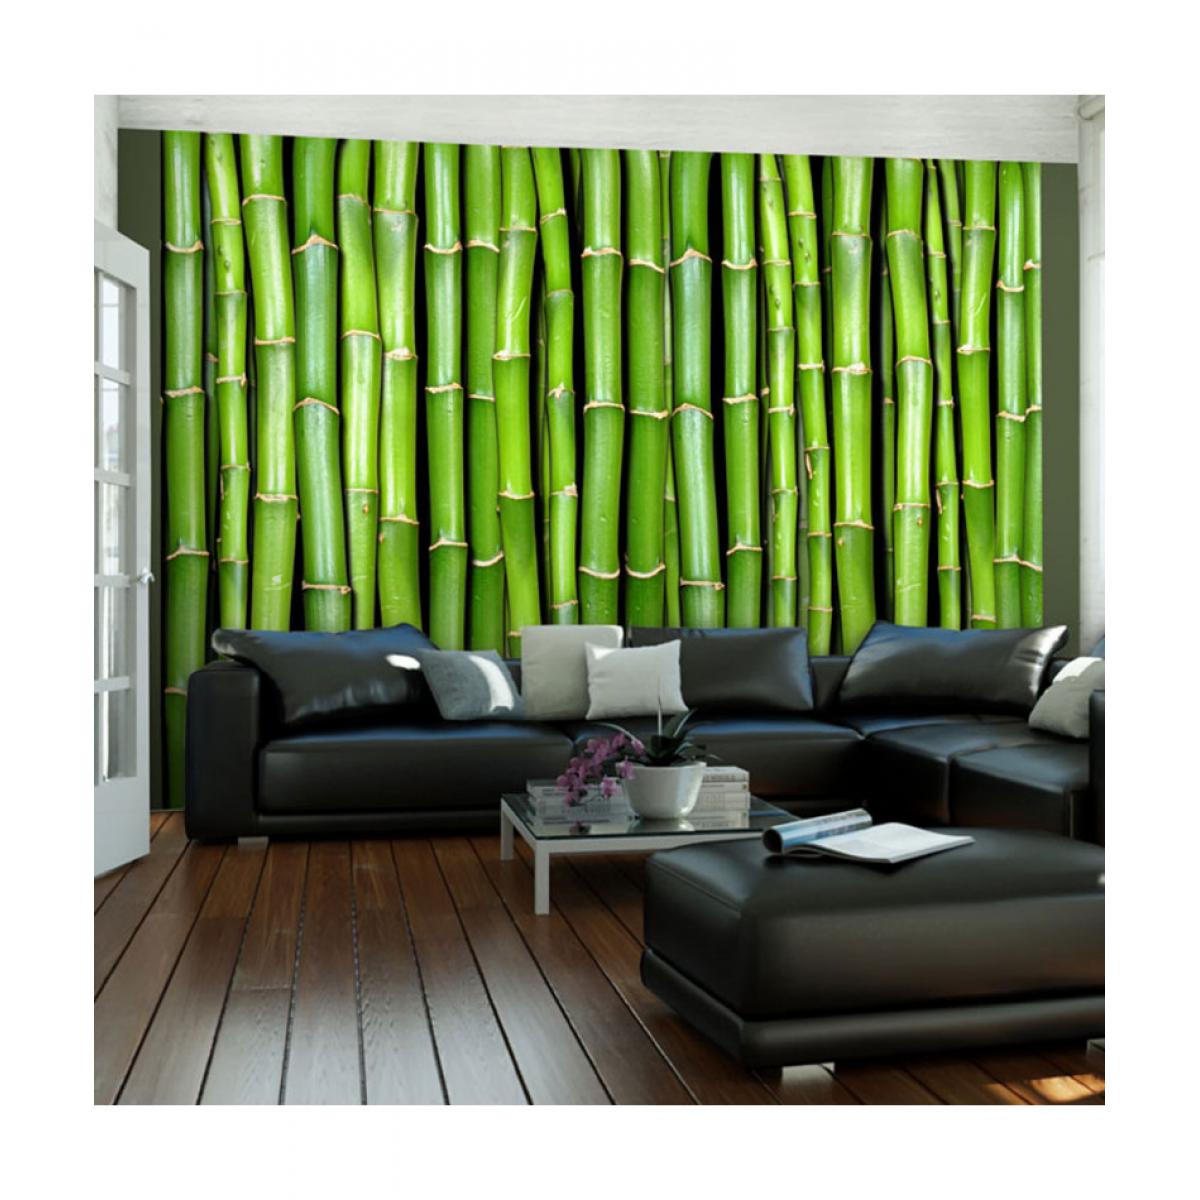 Artgeist - Papier peint - Mur vert bambou 200x154 - Papier peint